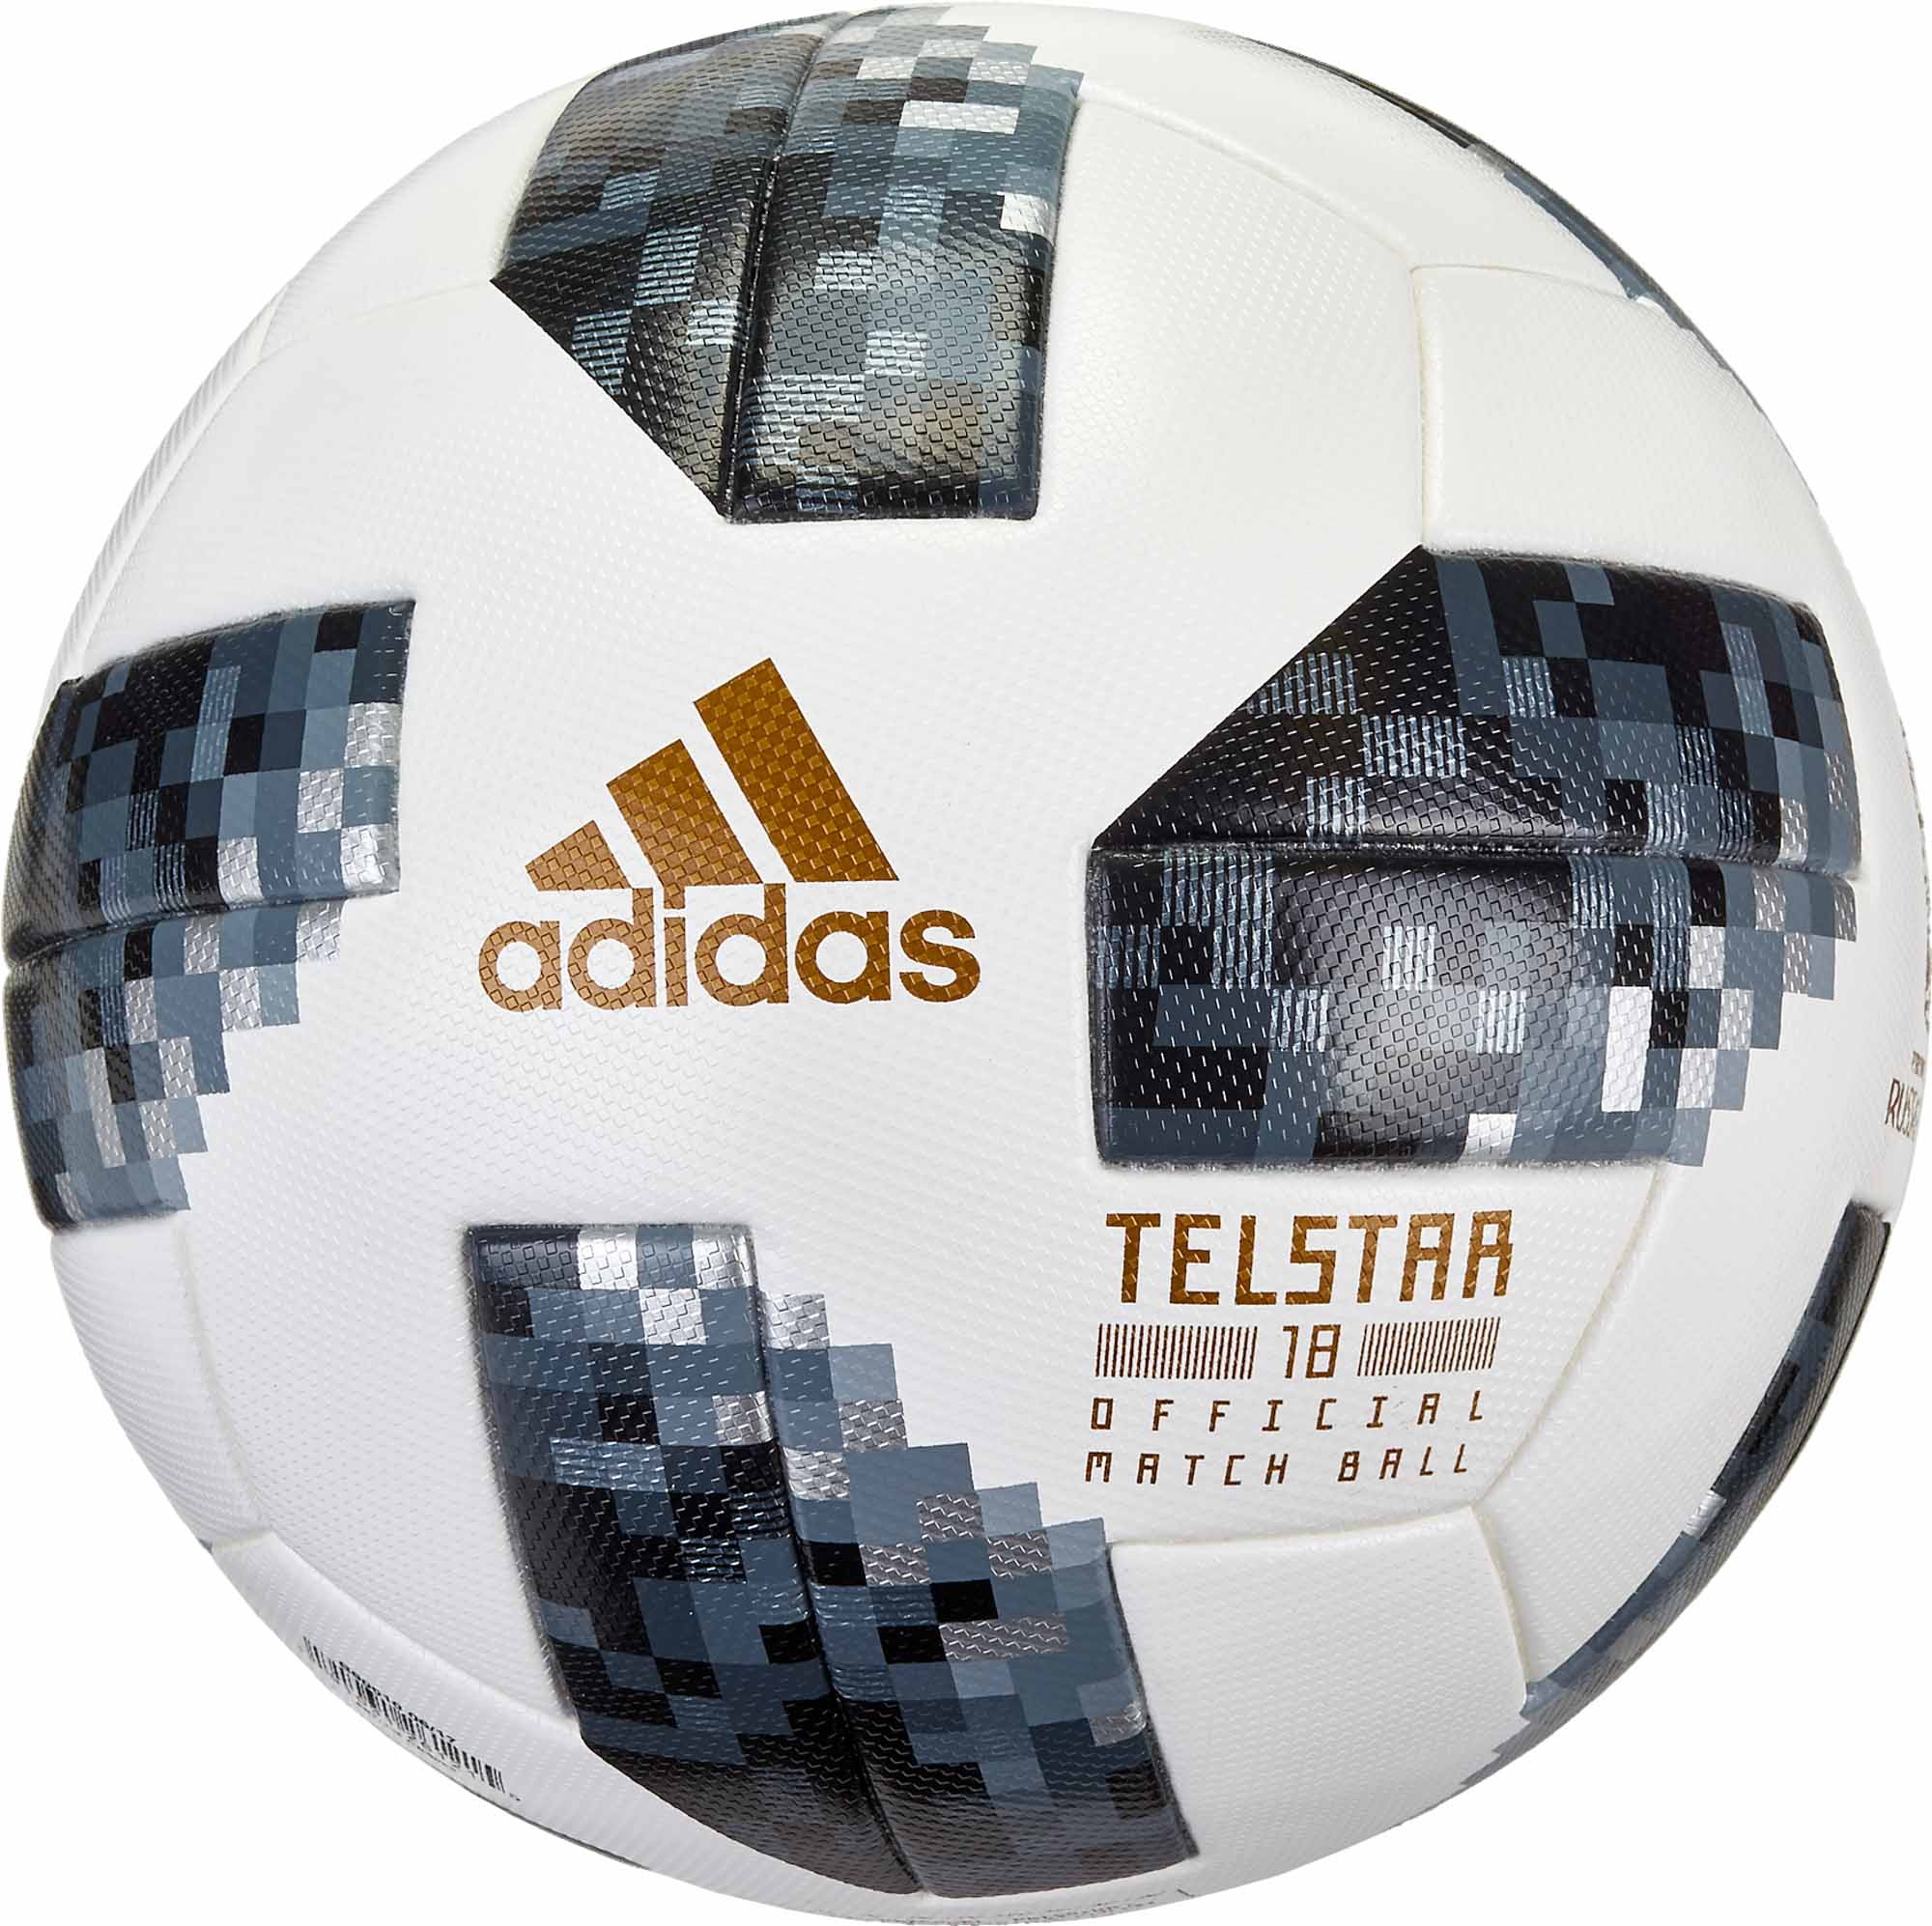 adidas Telstar 18 World Cup Match Ball 